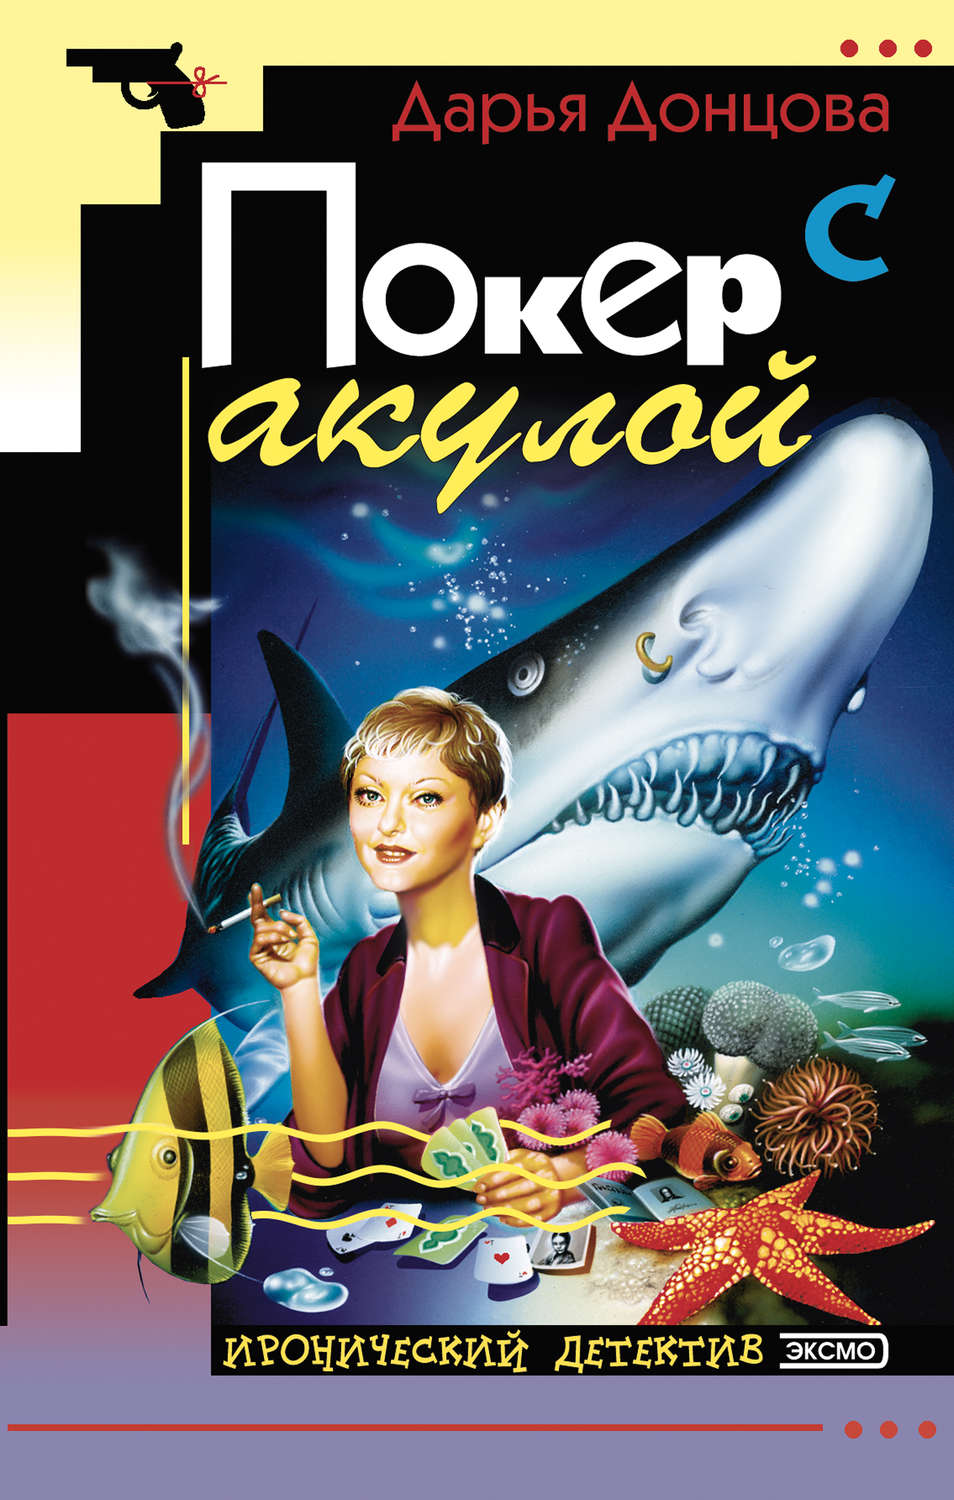 Донцова покер с акулой скачать книги бесплатно